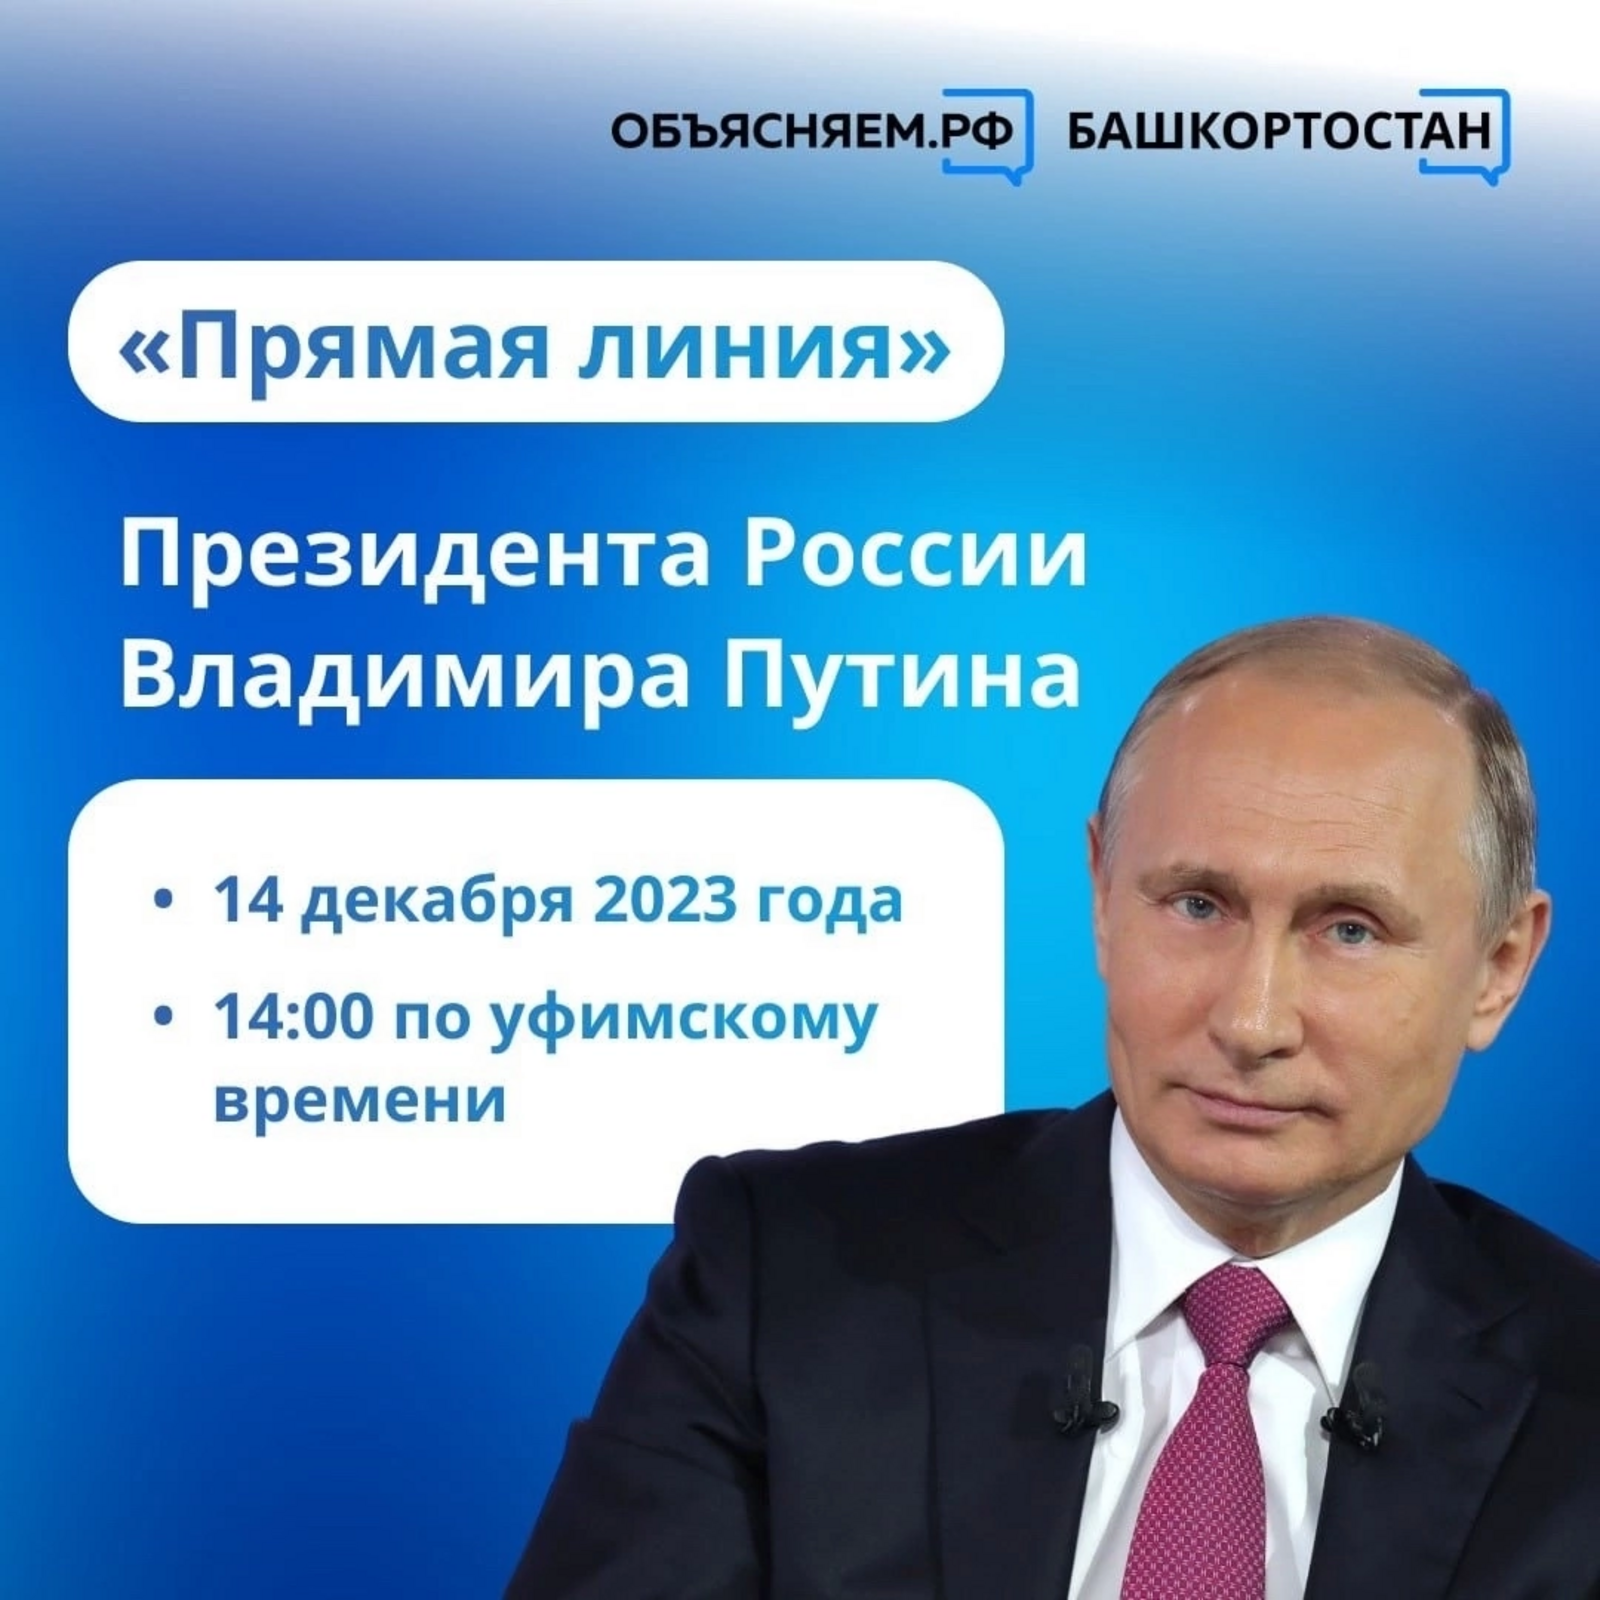 Большую пресс-конференцию Президента России Владимира Путина объединили с «Прямой линией»